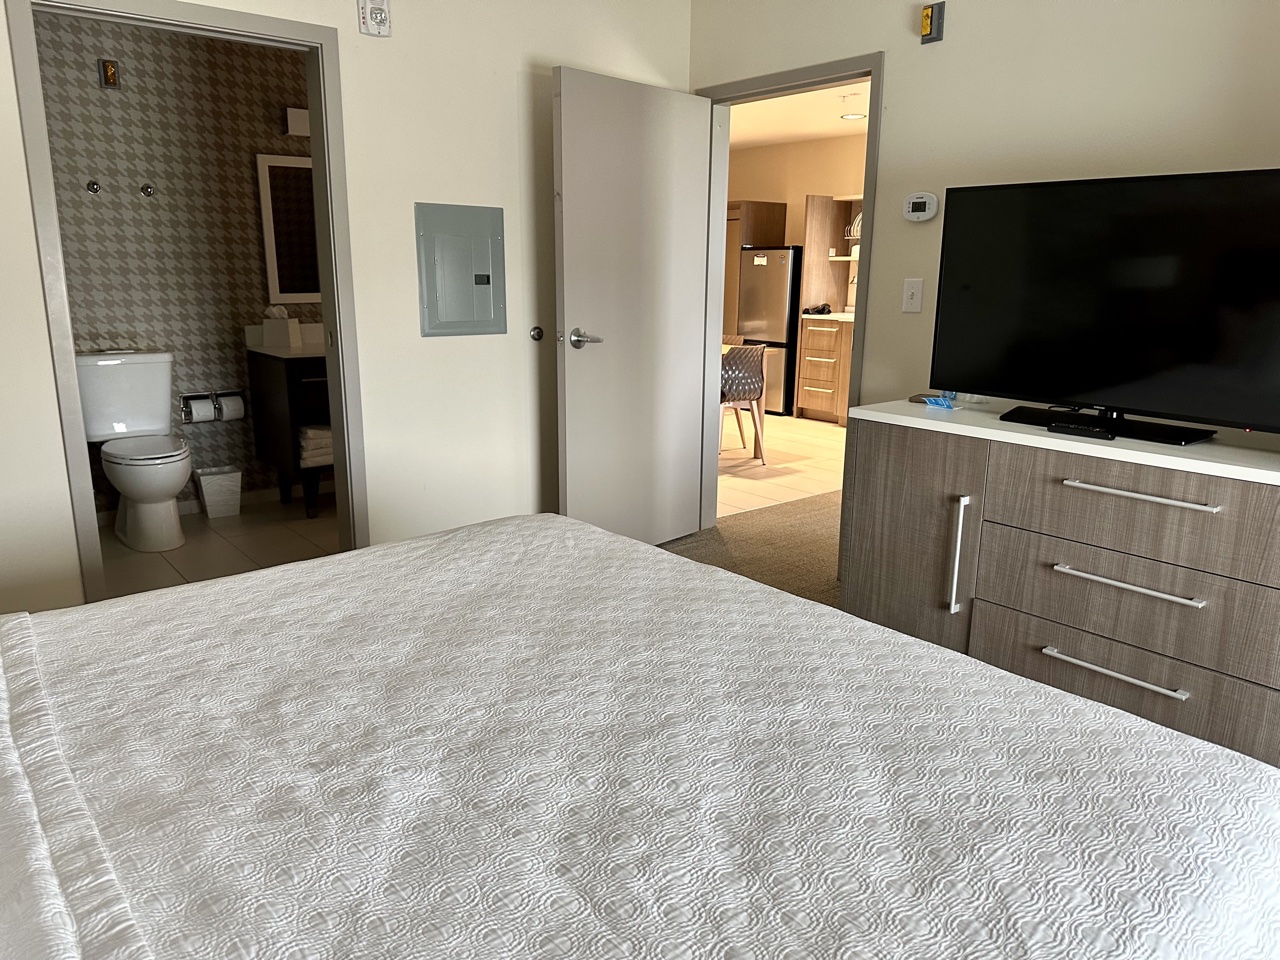 home2 suites orlando bedroom dresser